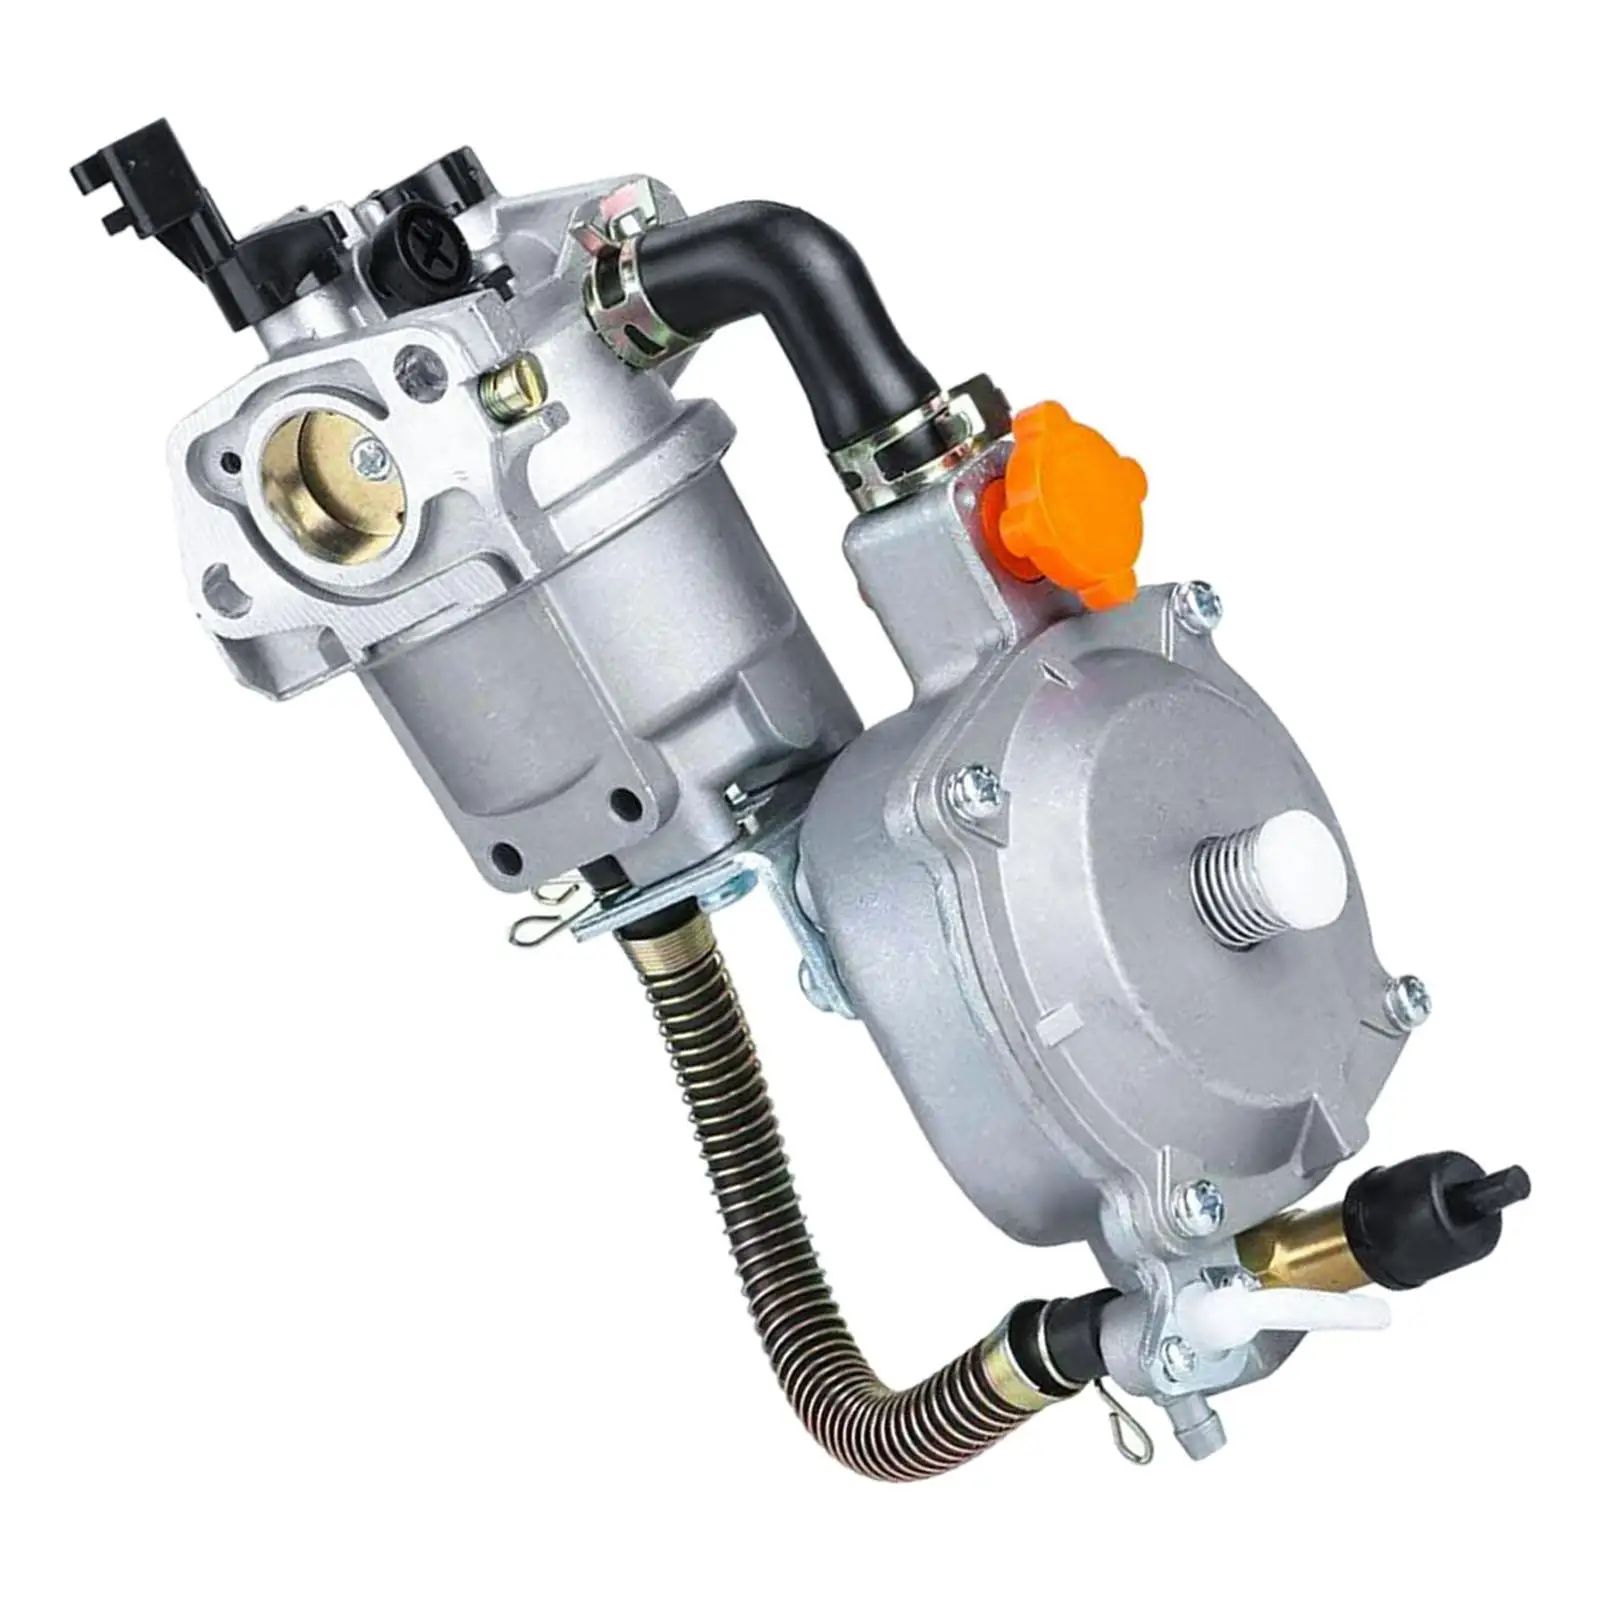 Dual Fuel Carburetor Dual Fuel Carburetor Kit Lpg Ng Conversion for 168F